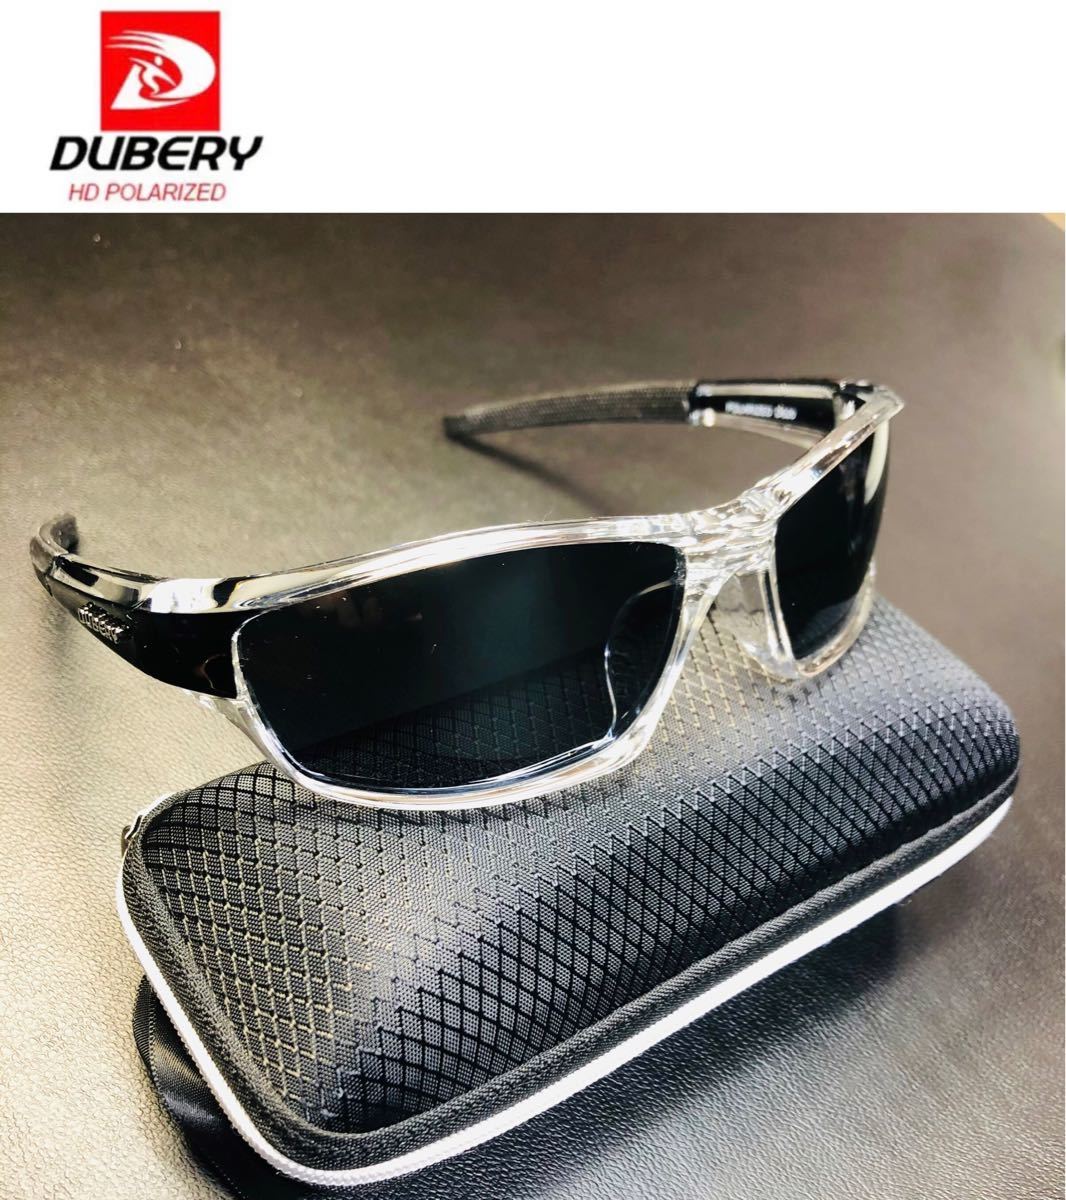 DUBERY サングラス 偏光グラス 黒 UV400 軽量 車 アウトドア スポーツサングラス